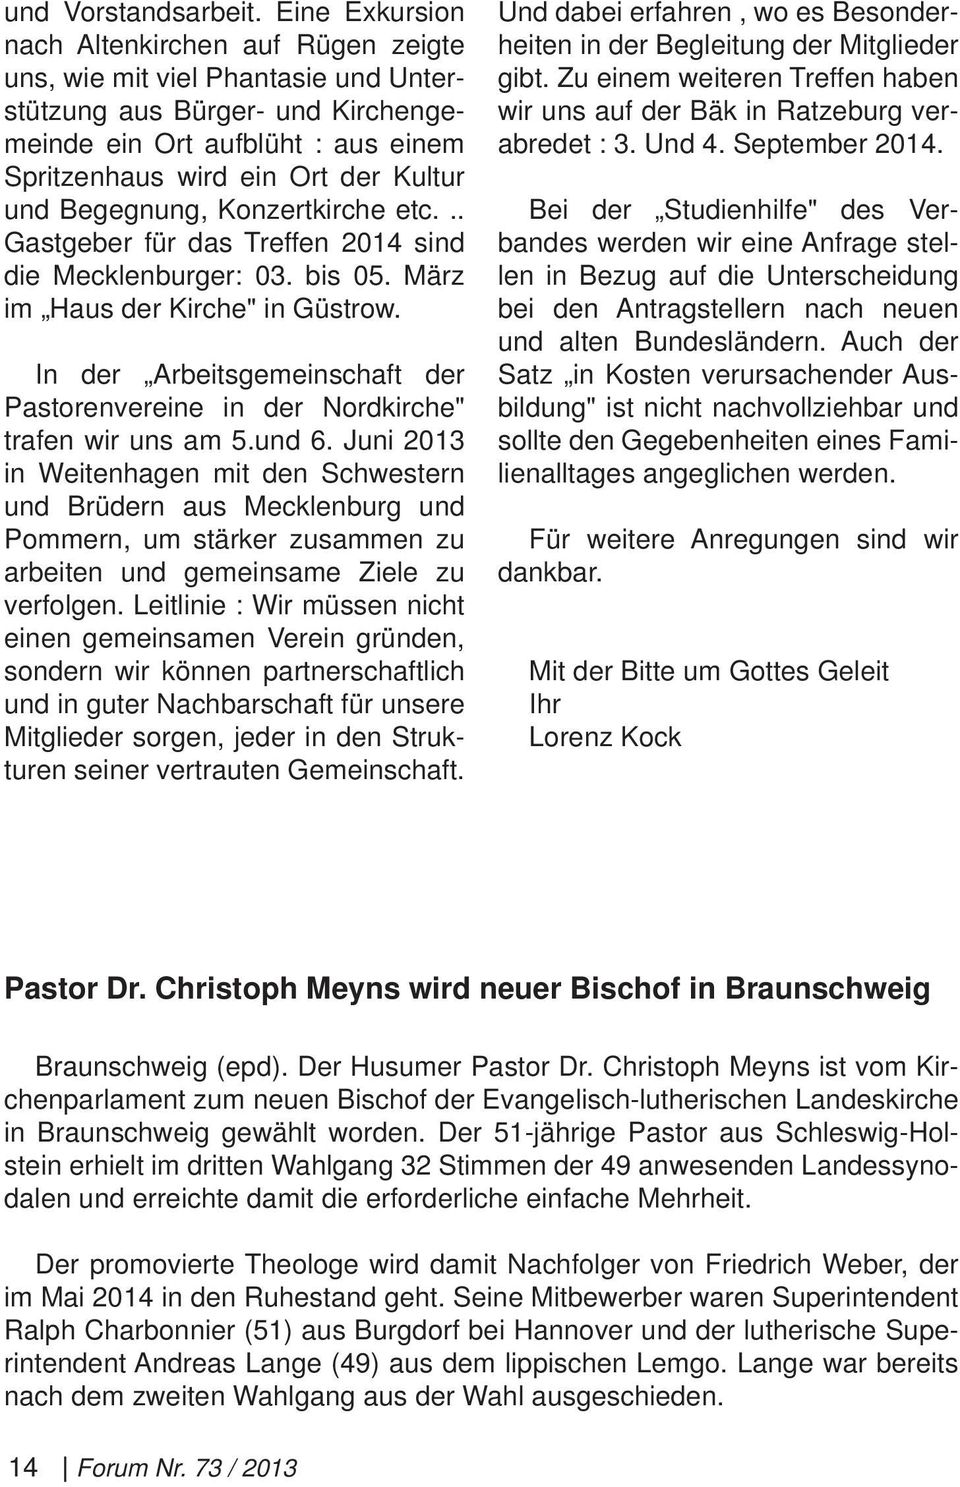 Begegnung, Konzertkirche etc... Gastgeber für das Treffen 2014 sind die Mecklenburger: 03. bis 05. März im Haus der Kirche" in Güstrow.